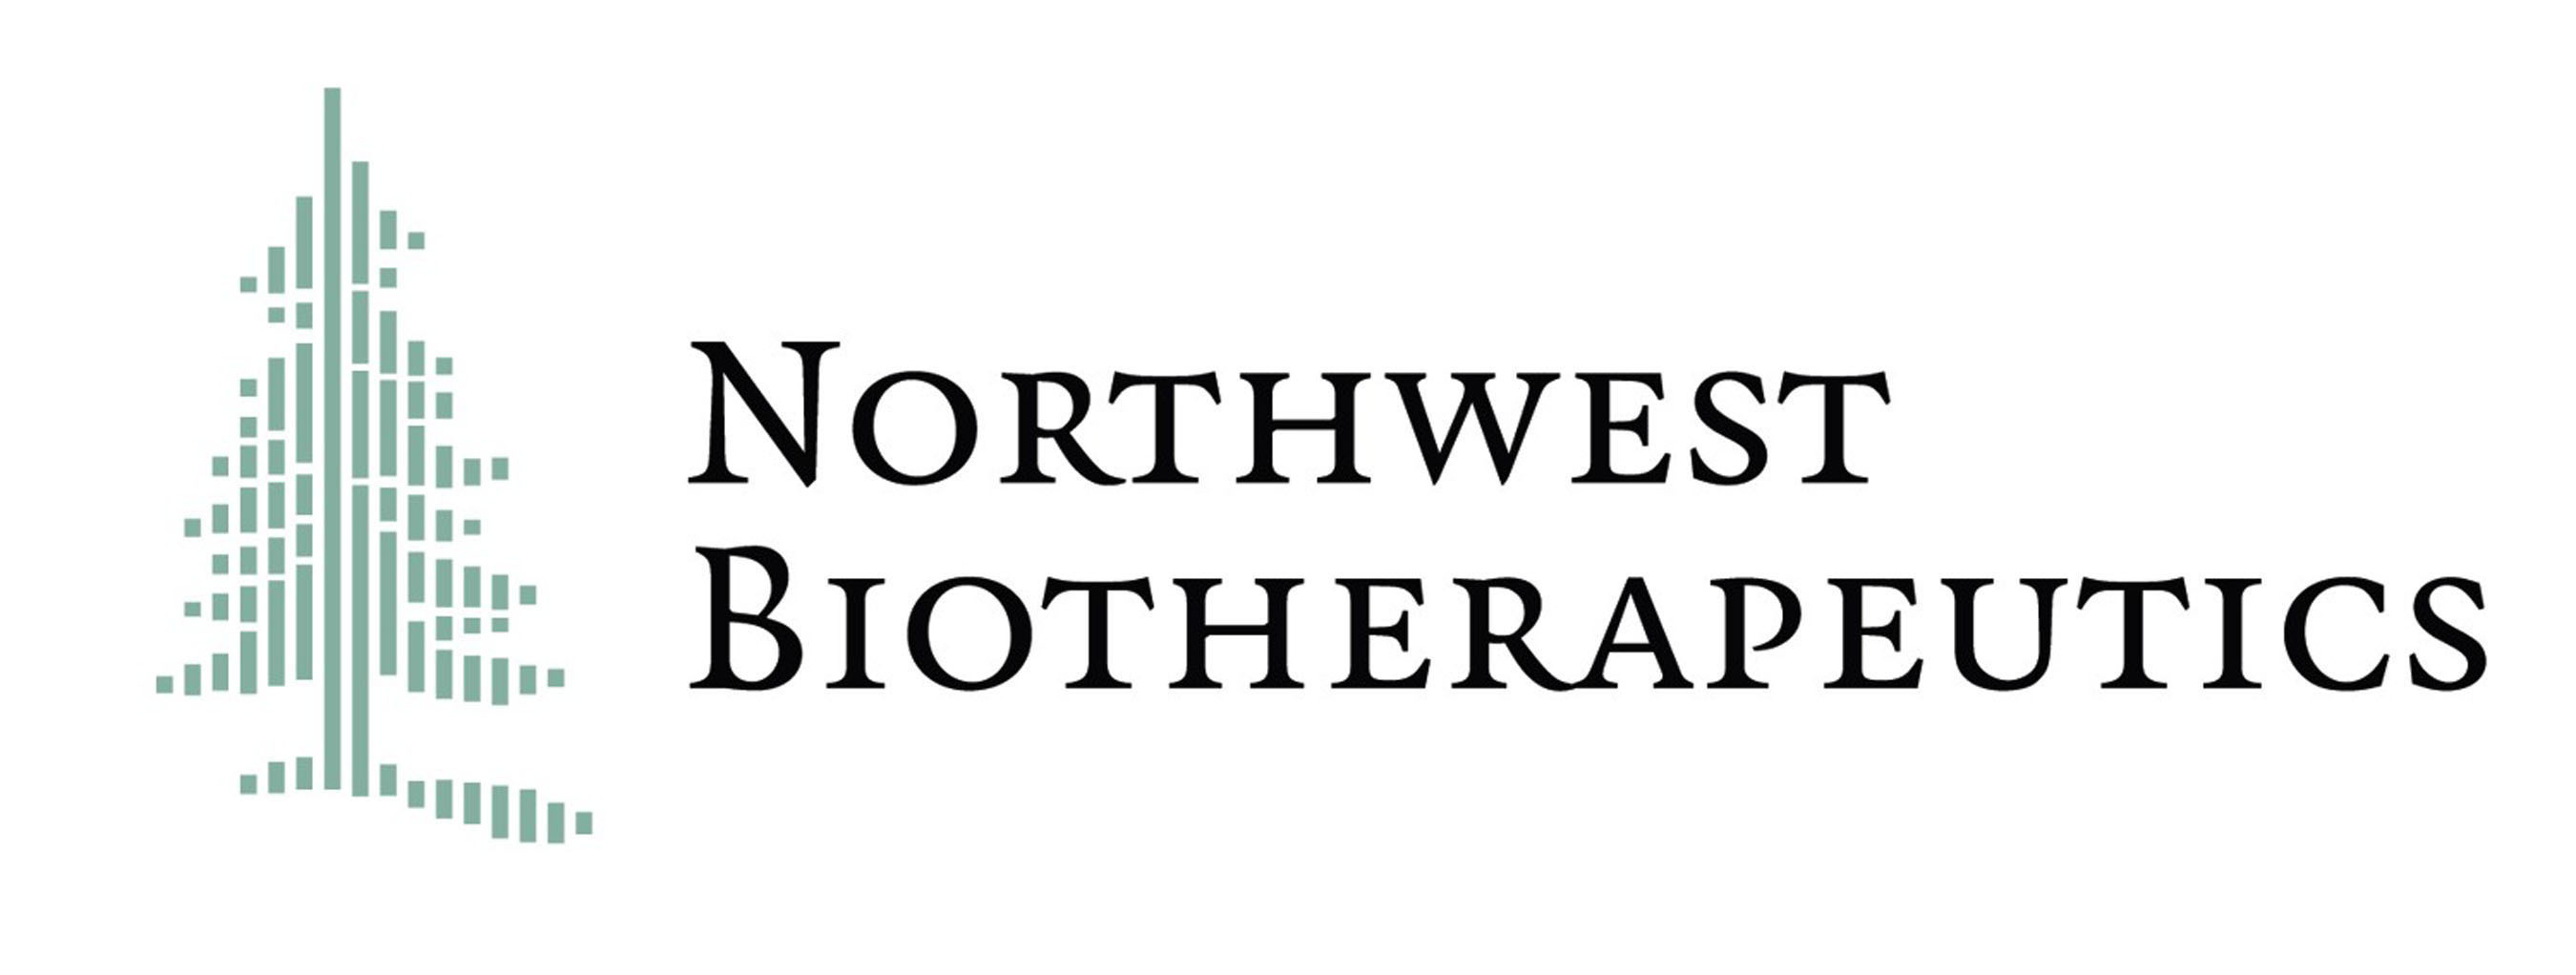 Northwest Biotherapeutics Logo.